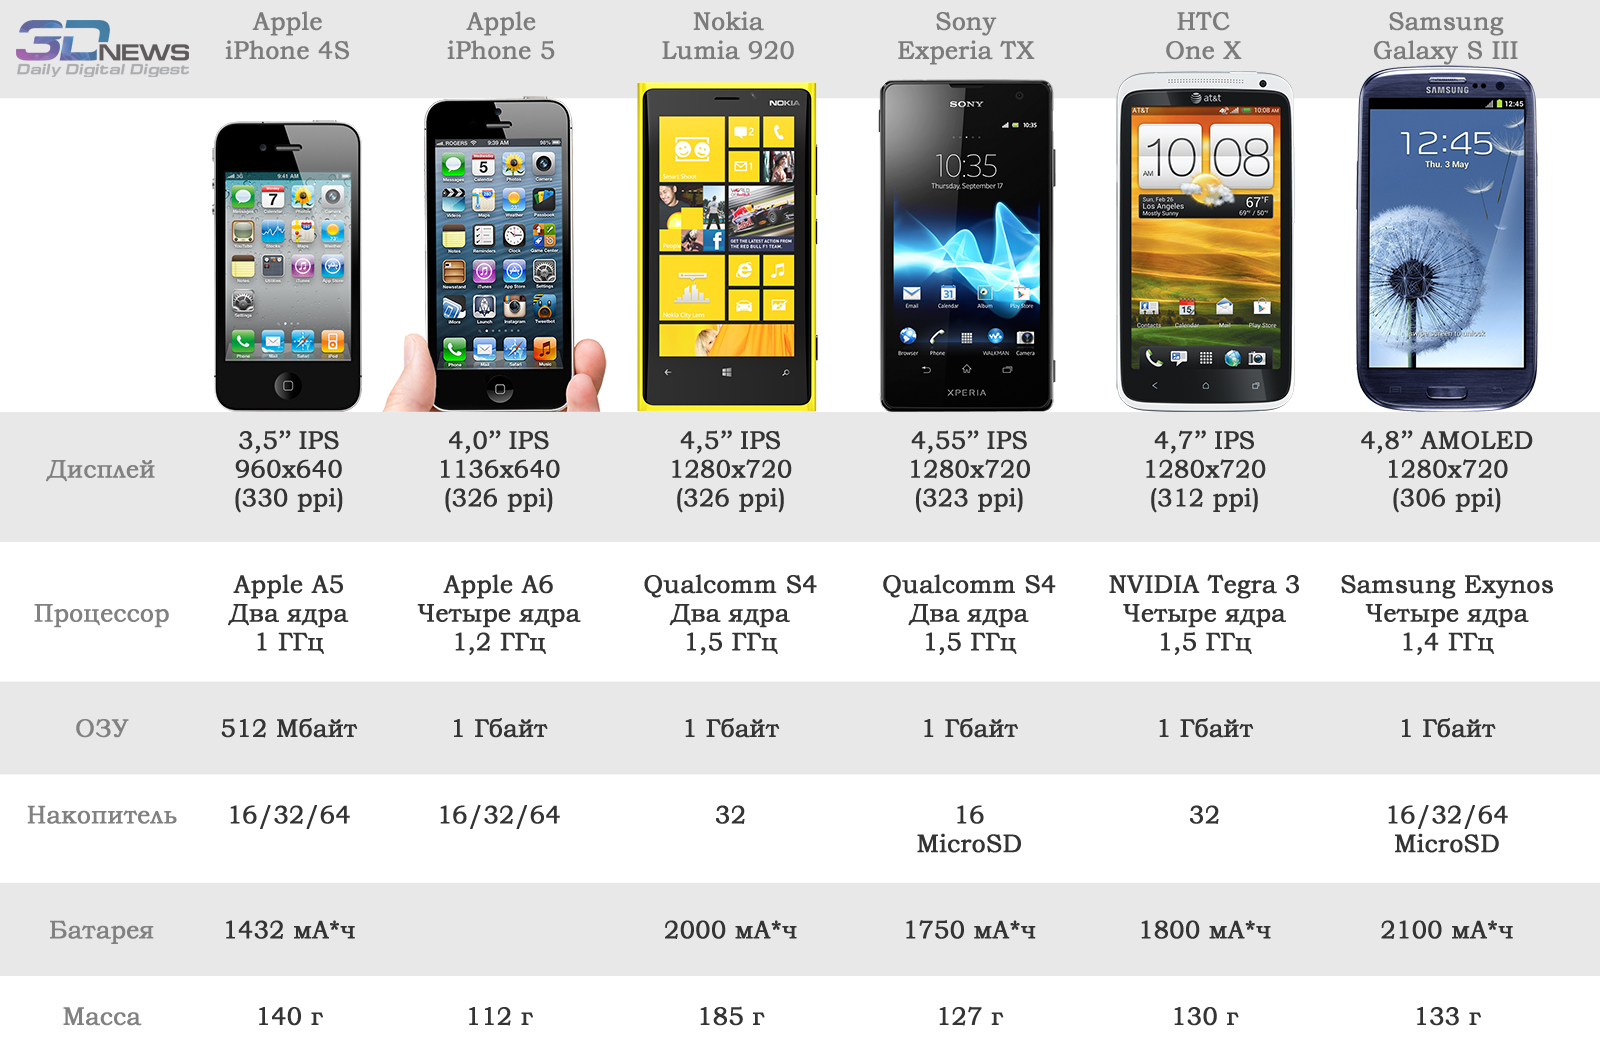 Содержание есть телефоне. Iphone 5 характеристики моделей. Айфон 5 параметры. Характеристики смартфона. Габариты современных смартфонов.